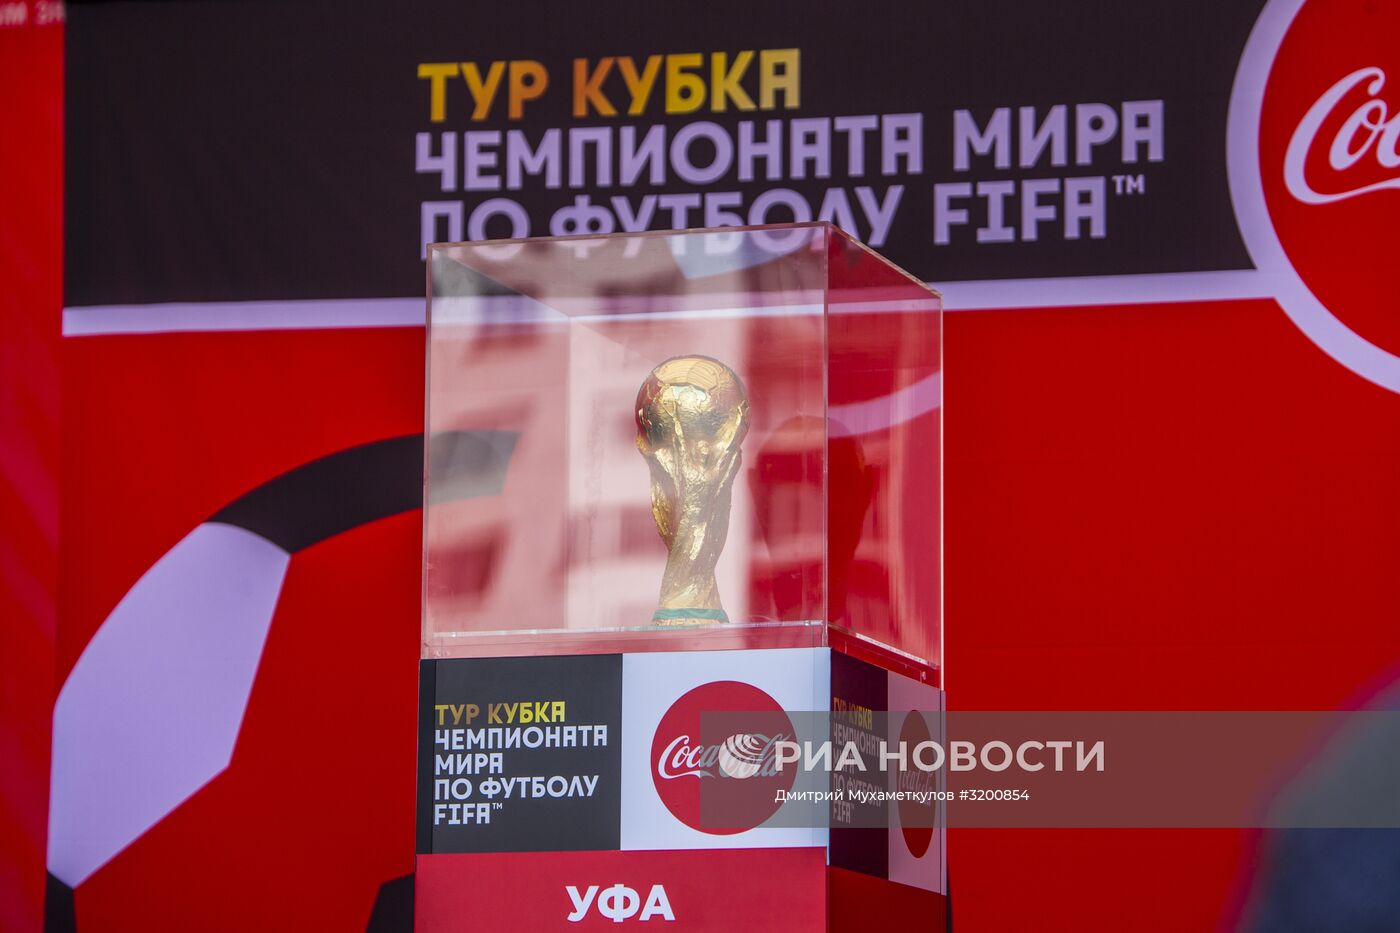 Кубок ЧМ-2018 по футболу представили в Уфе